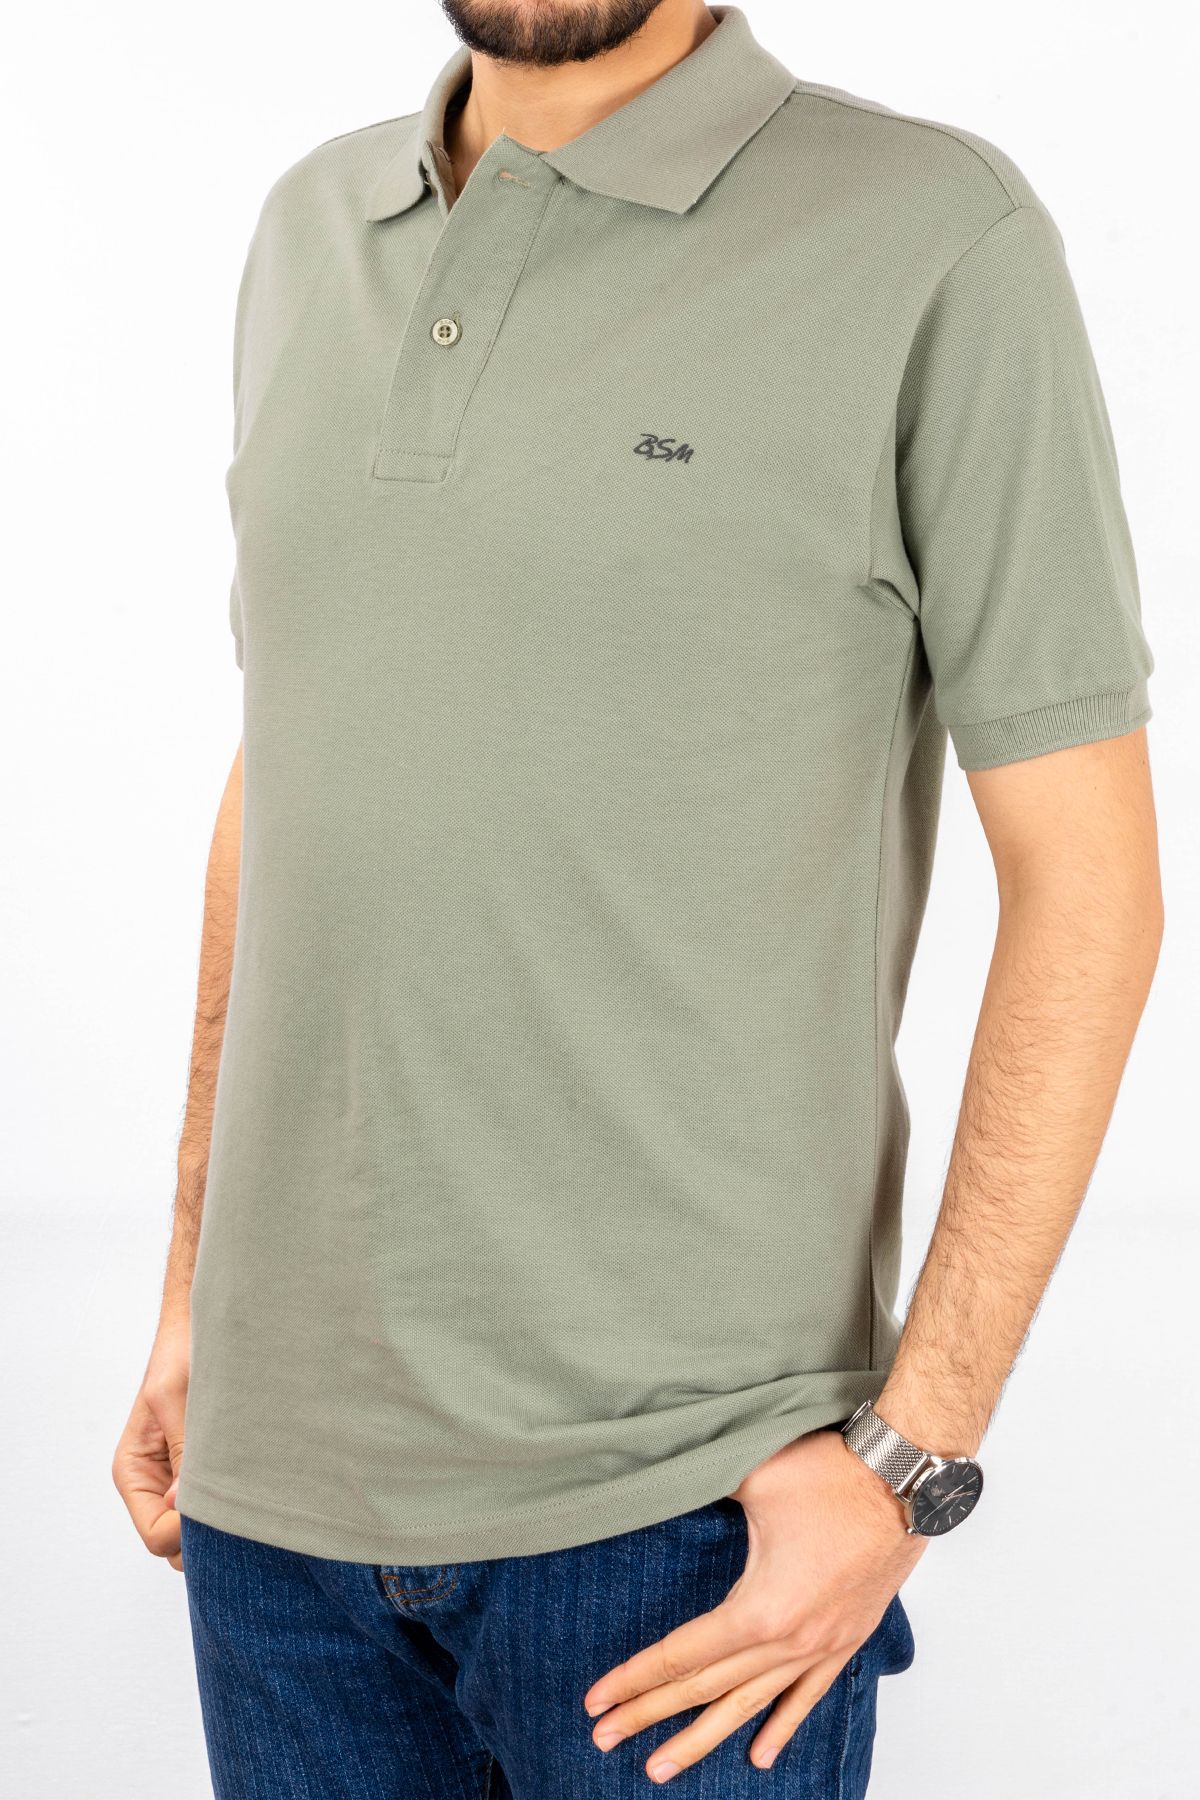 BSM Erkek Yüksek Kalite Kısa Kollu Polo Yaka Açık Yeşil Pike T-Shirt